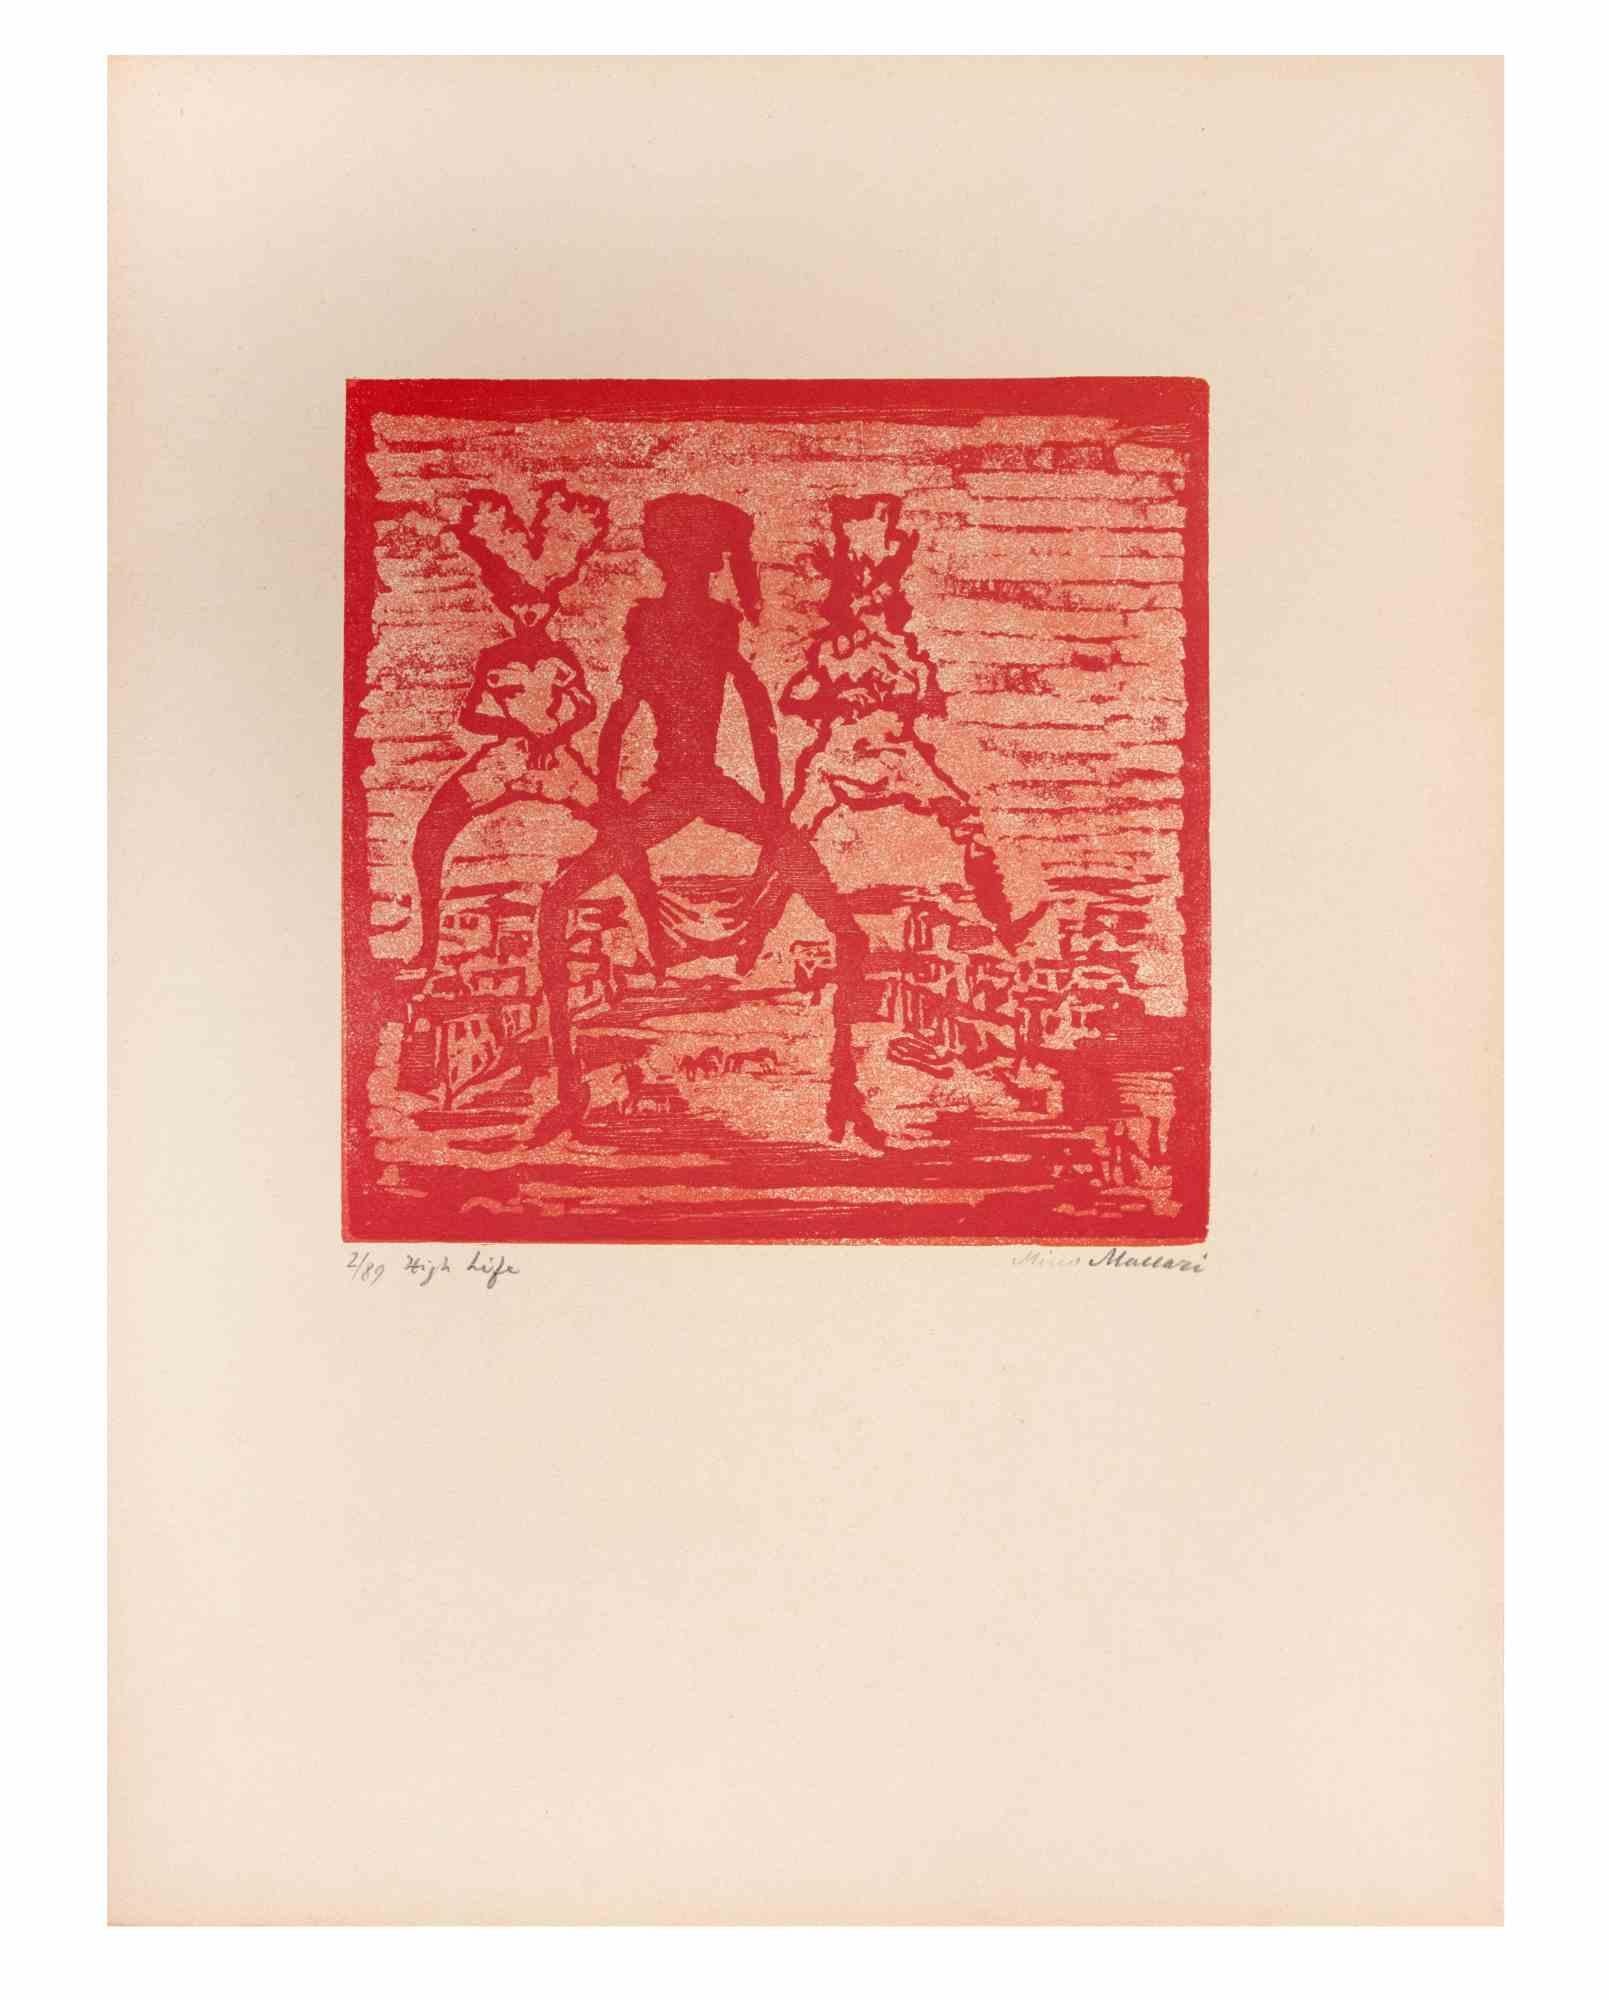 La vie est une œuvre d'art réalisée par Mino Maccari (1924-1989) au milieu du 20e siècle.

Gravure sur bois colorée sur papier. Signé à la main dans la partie inférieure, numéroté 2/89 exemplaires et titré dans la marge gauche.

Bonnes